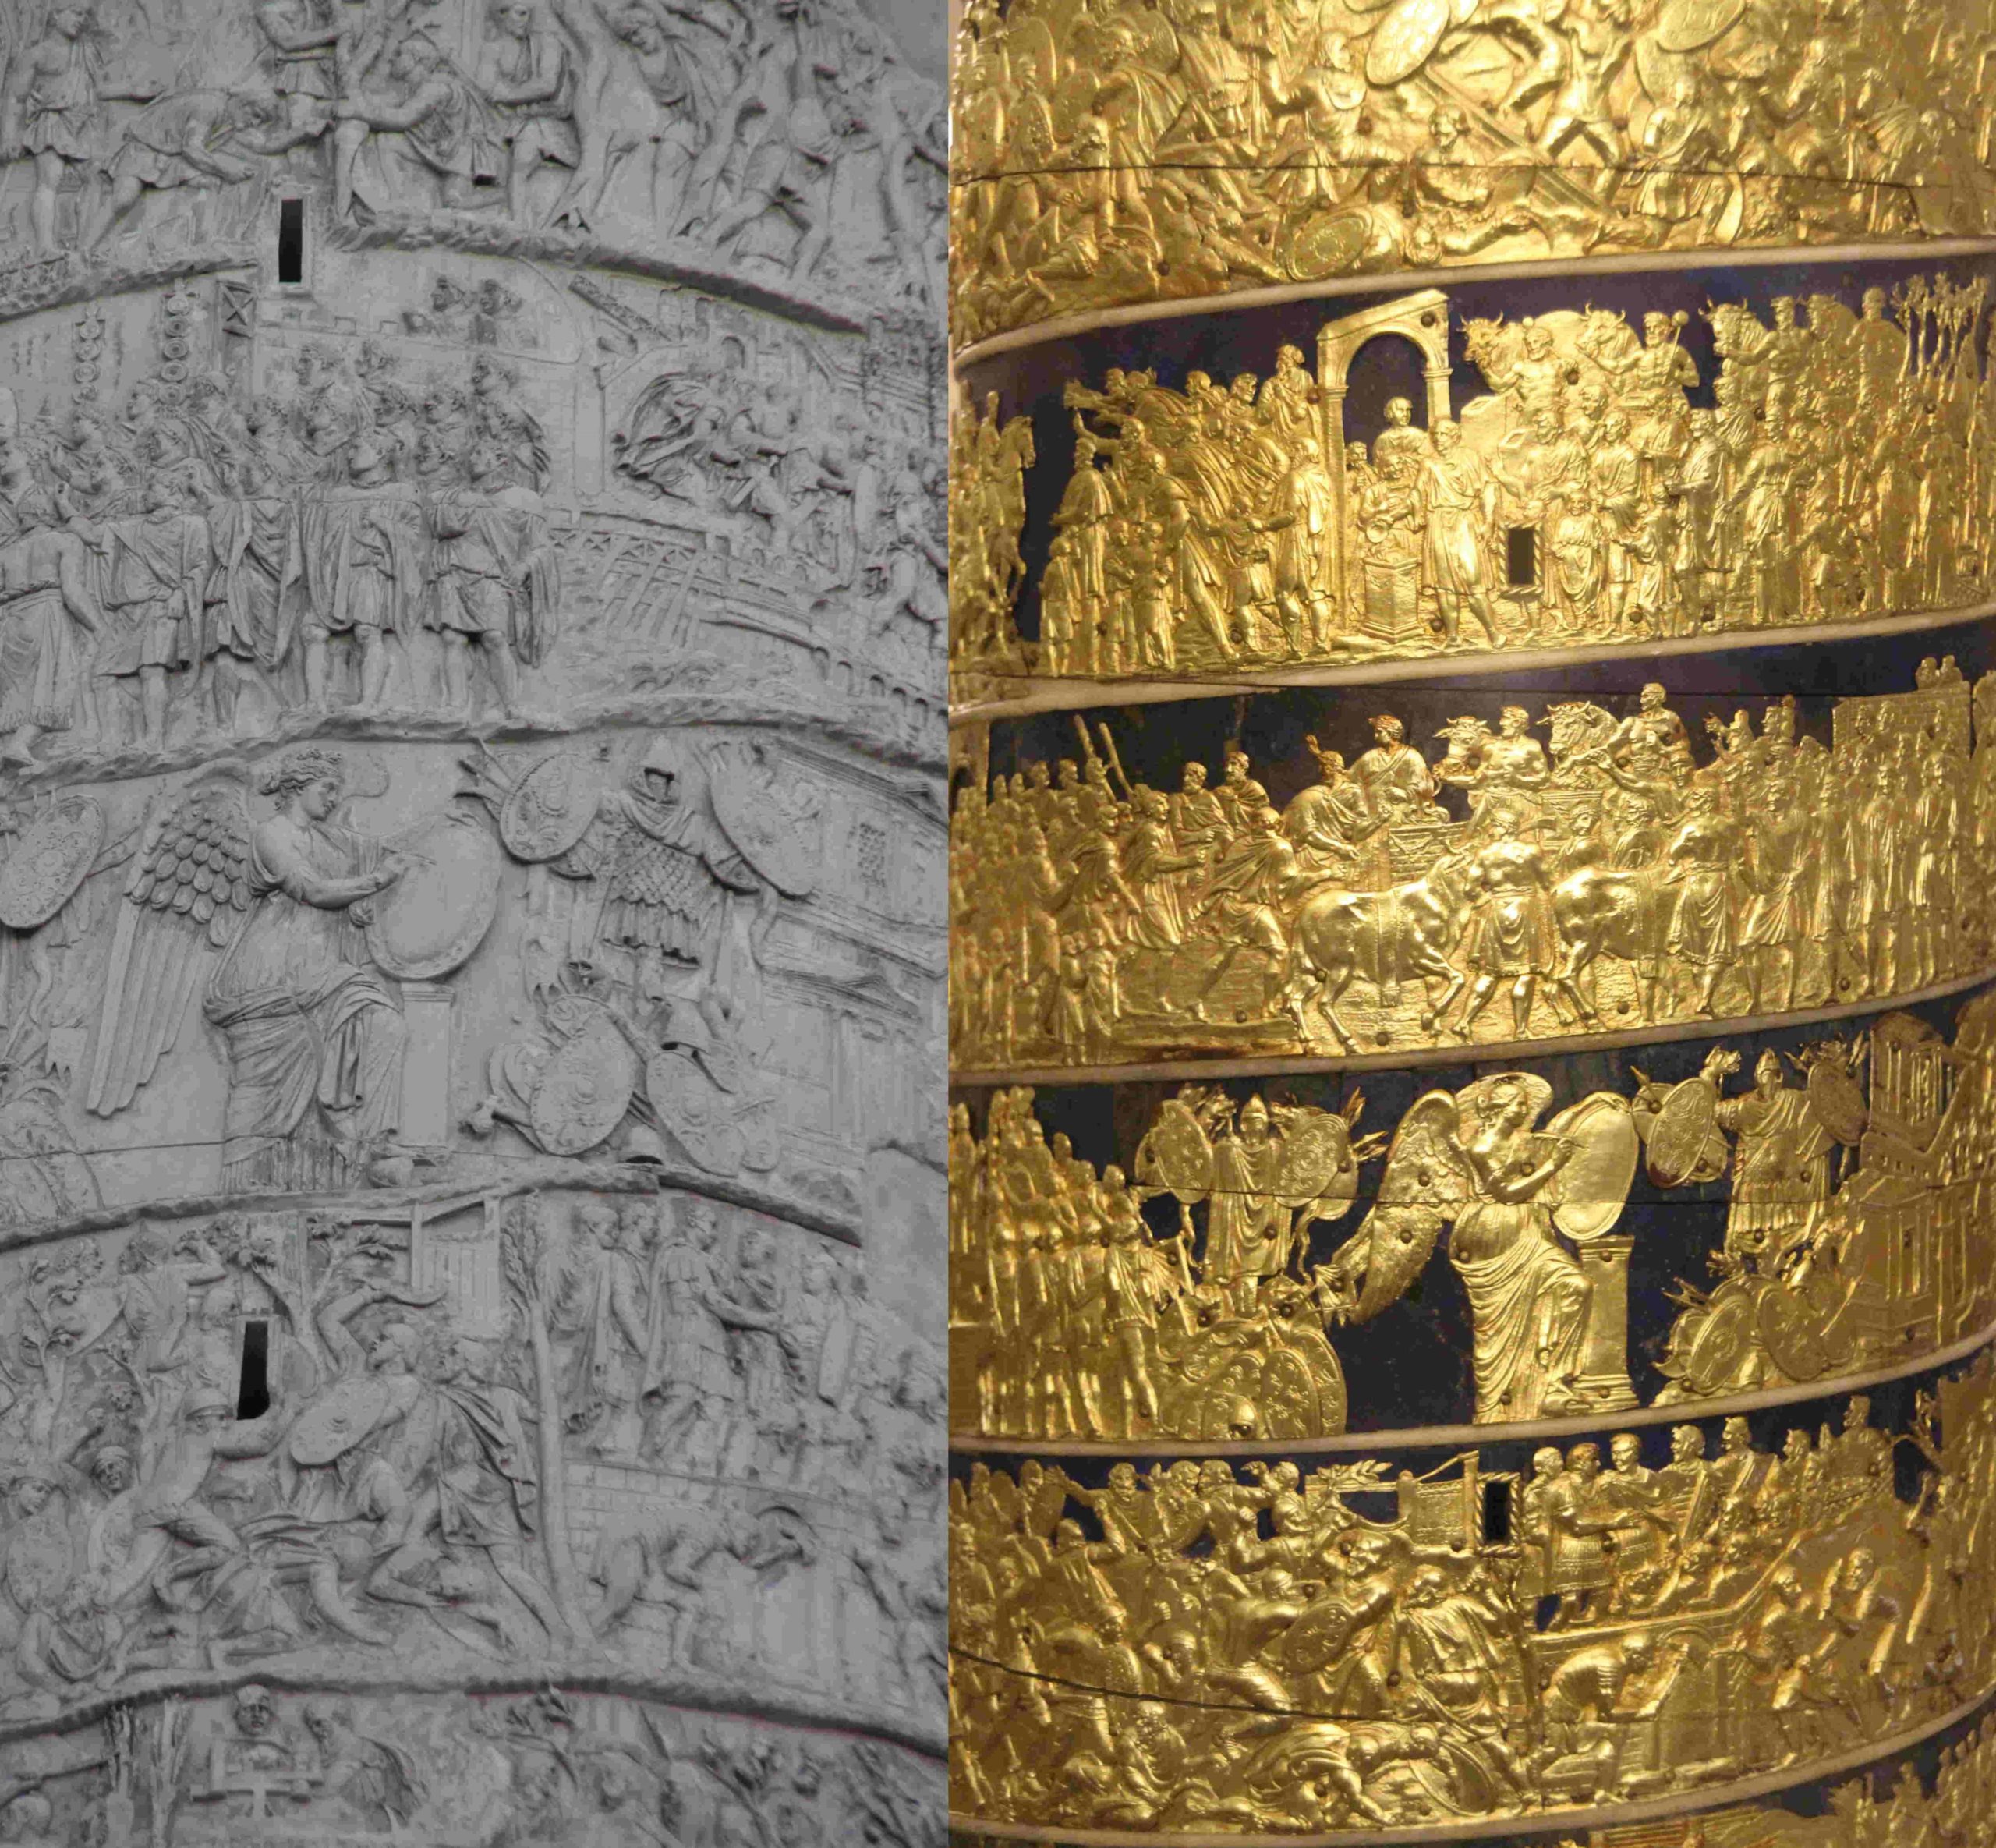 Kopie und Original - die gemeißelten Friesfiguren sind etwa 70 cm groß, die bronzenen Krieger messen dagegen zwischen drei und vier Zentimetern